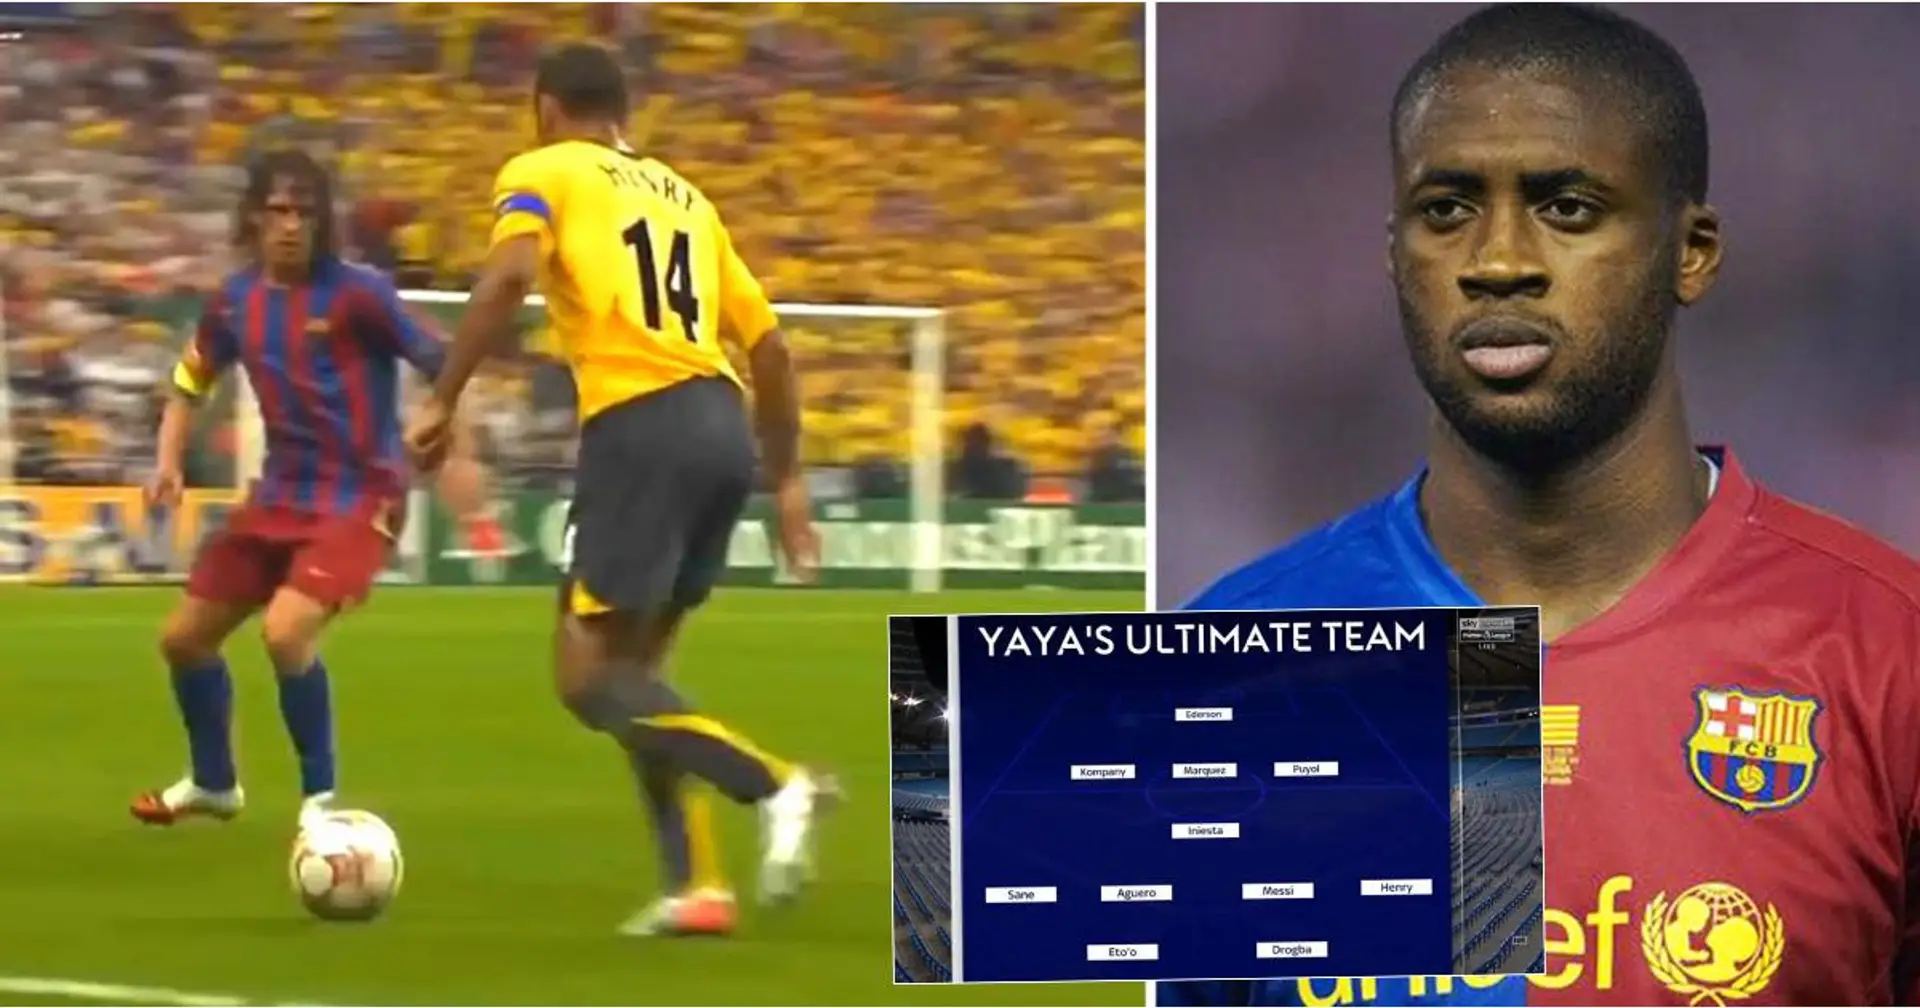 L'ultimate team di Yaya Toure è da pazzi - 6 attaccanti, 3 difensori e solo un centrocampista